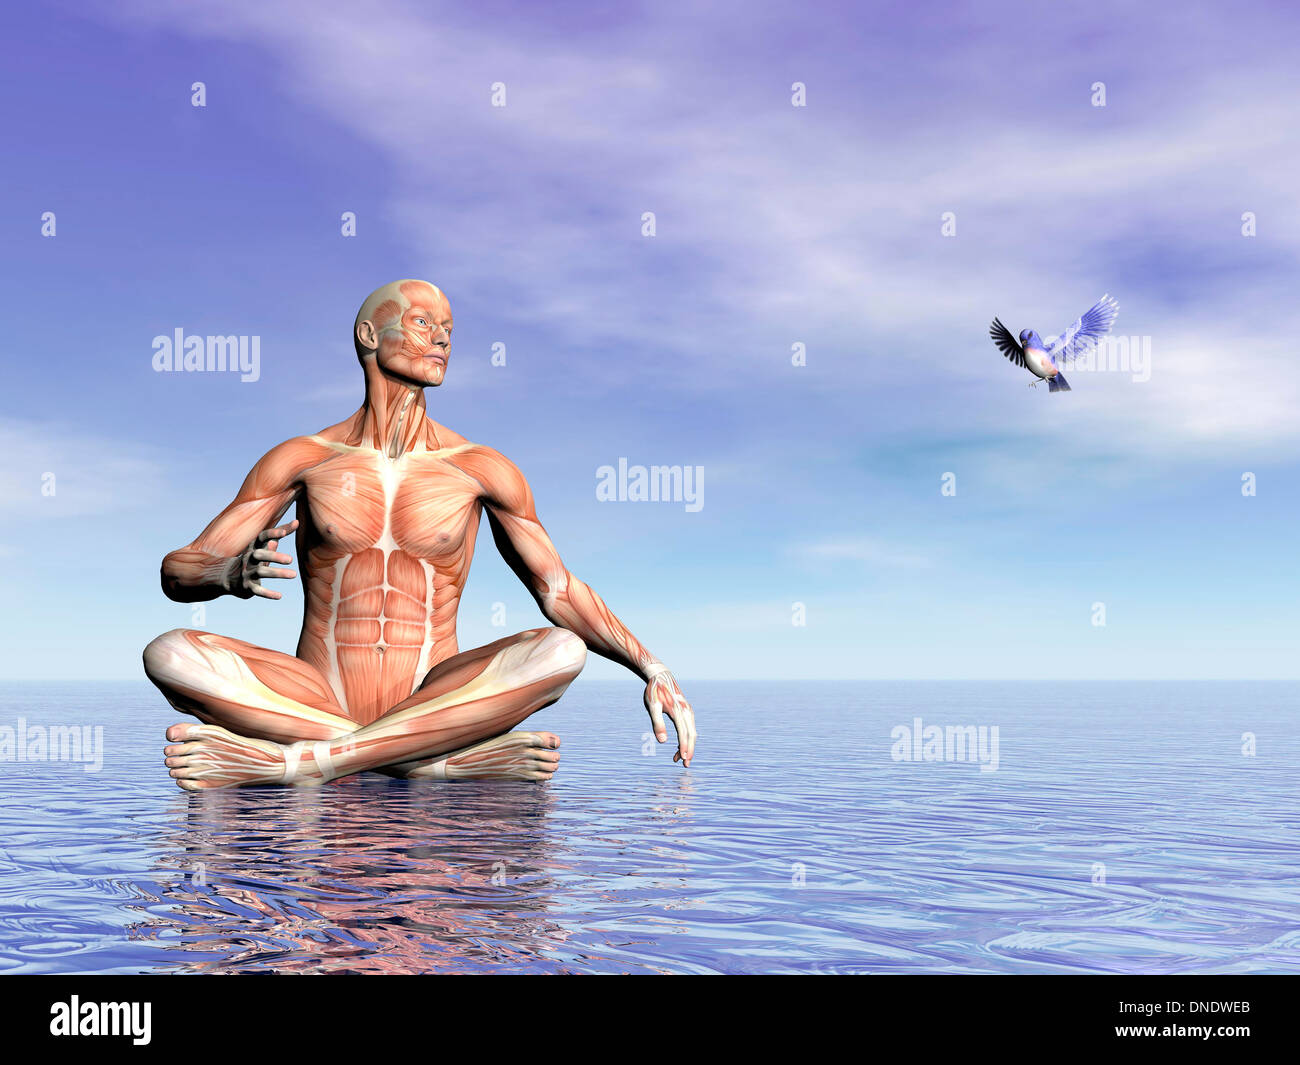 Musculature homme en position du lotus sur l'eau tout en regardant un beau petit oiseau voler. Banque D'Images